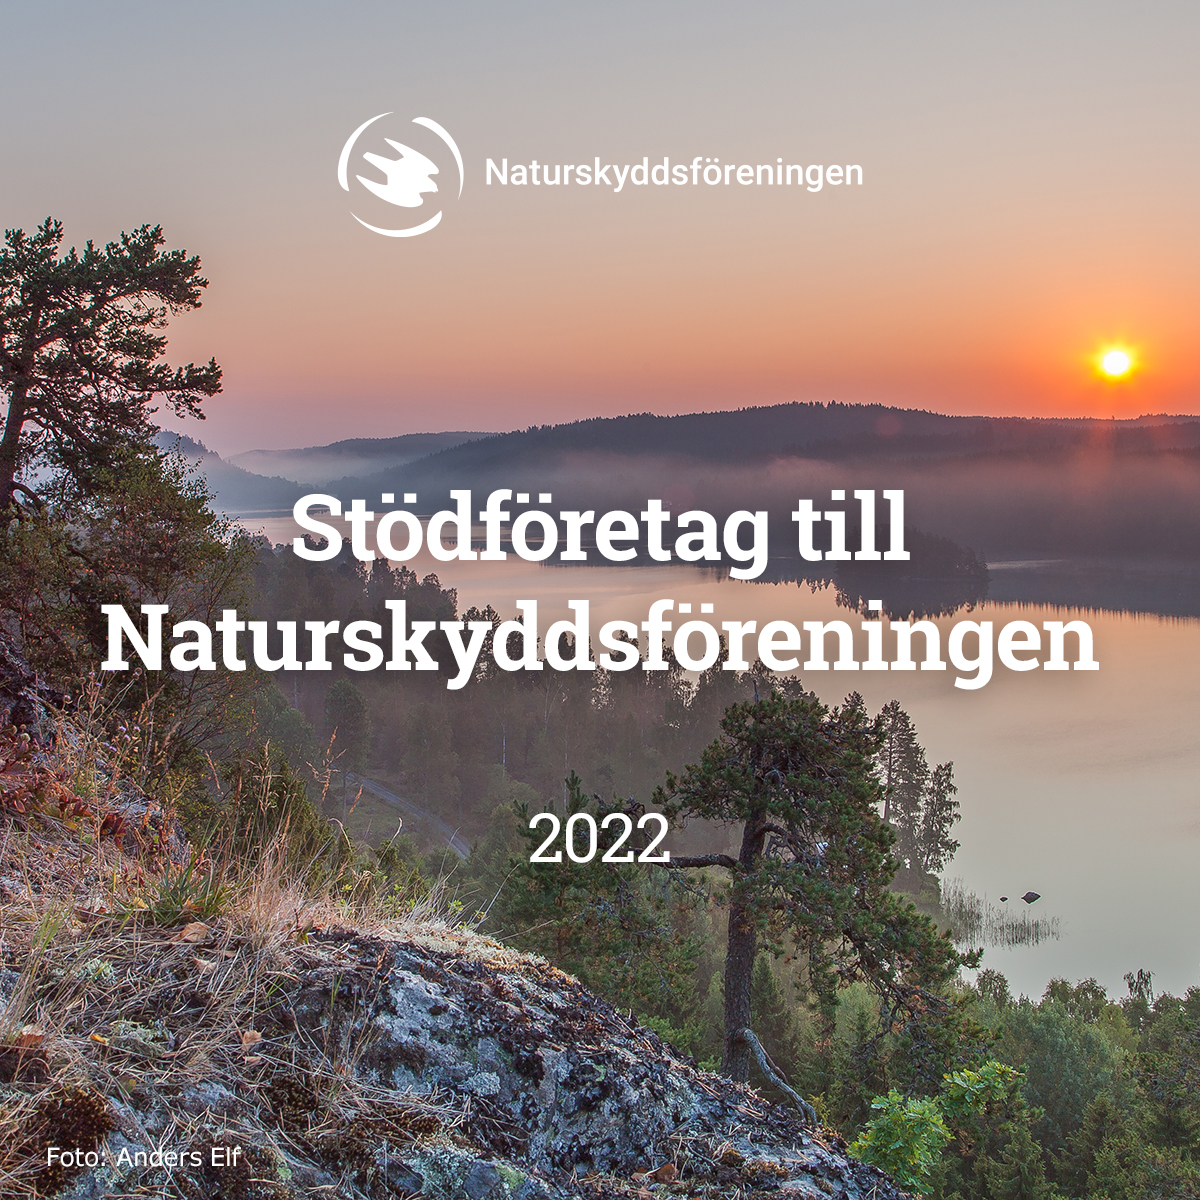 Naturskyddsforeningen_delningsbild_sociala_medier_2022